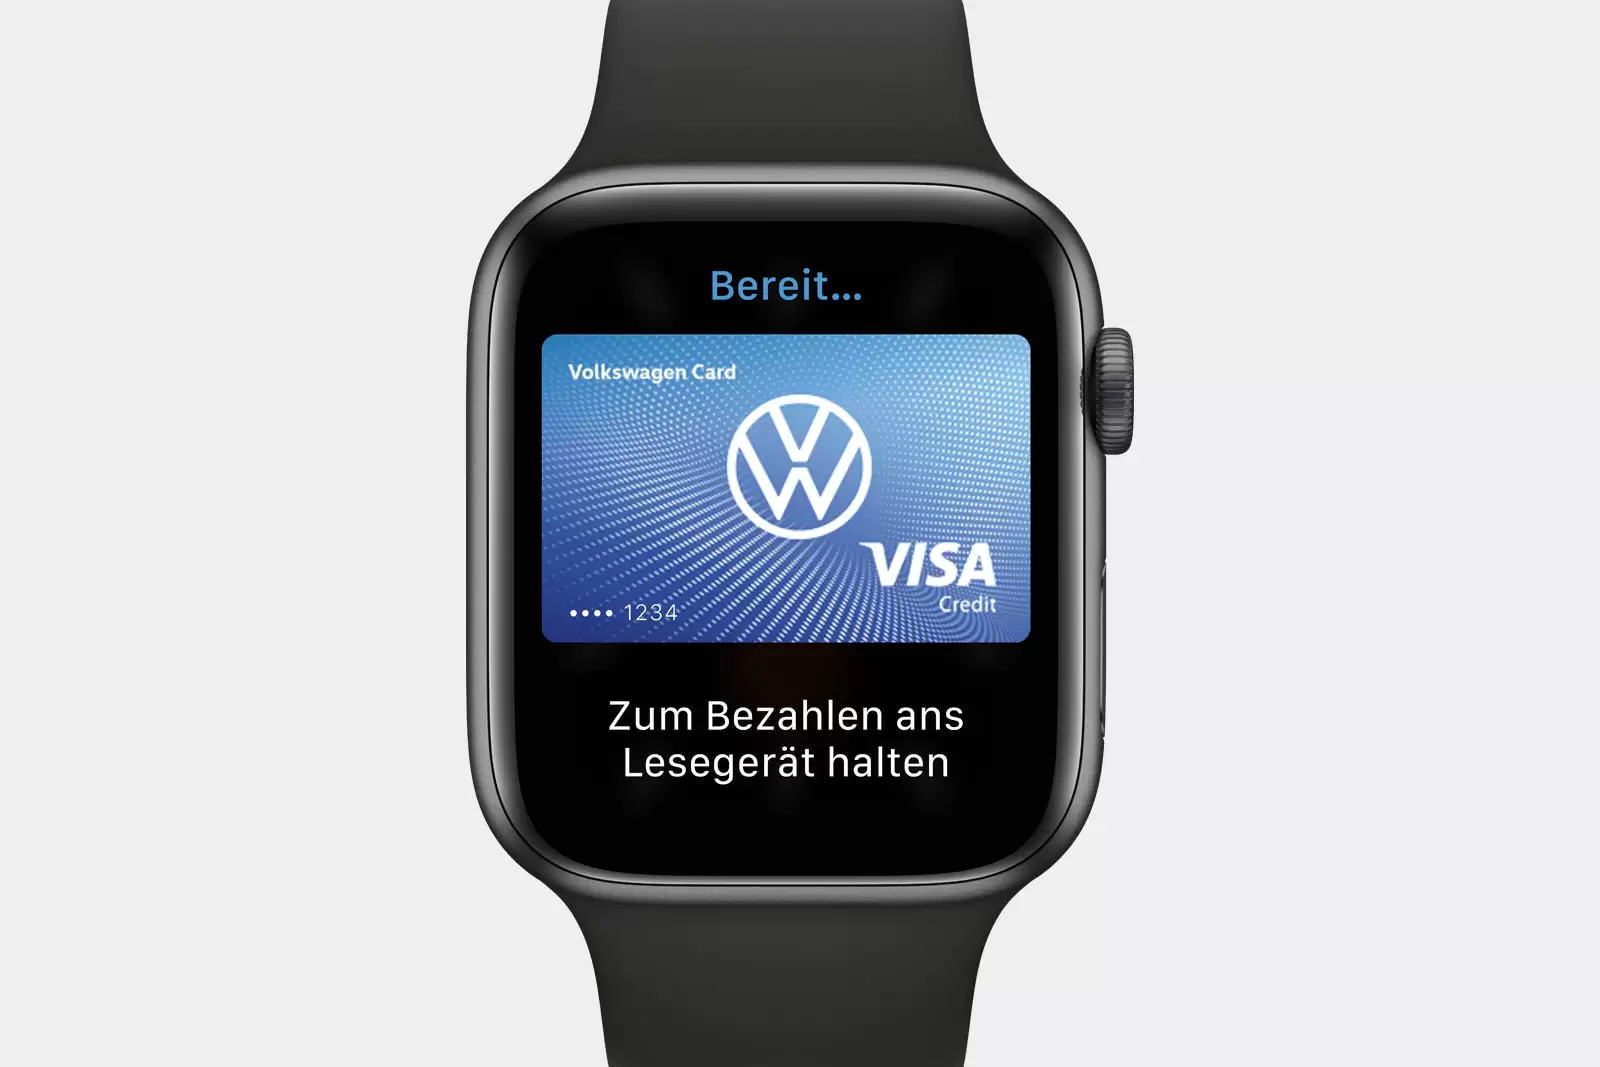 Apple Watch mit Volkswagen Card Bezahlfunktion